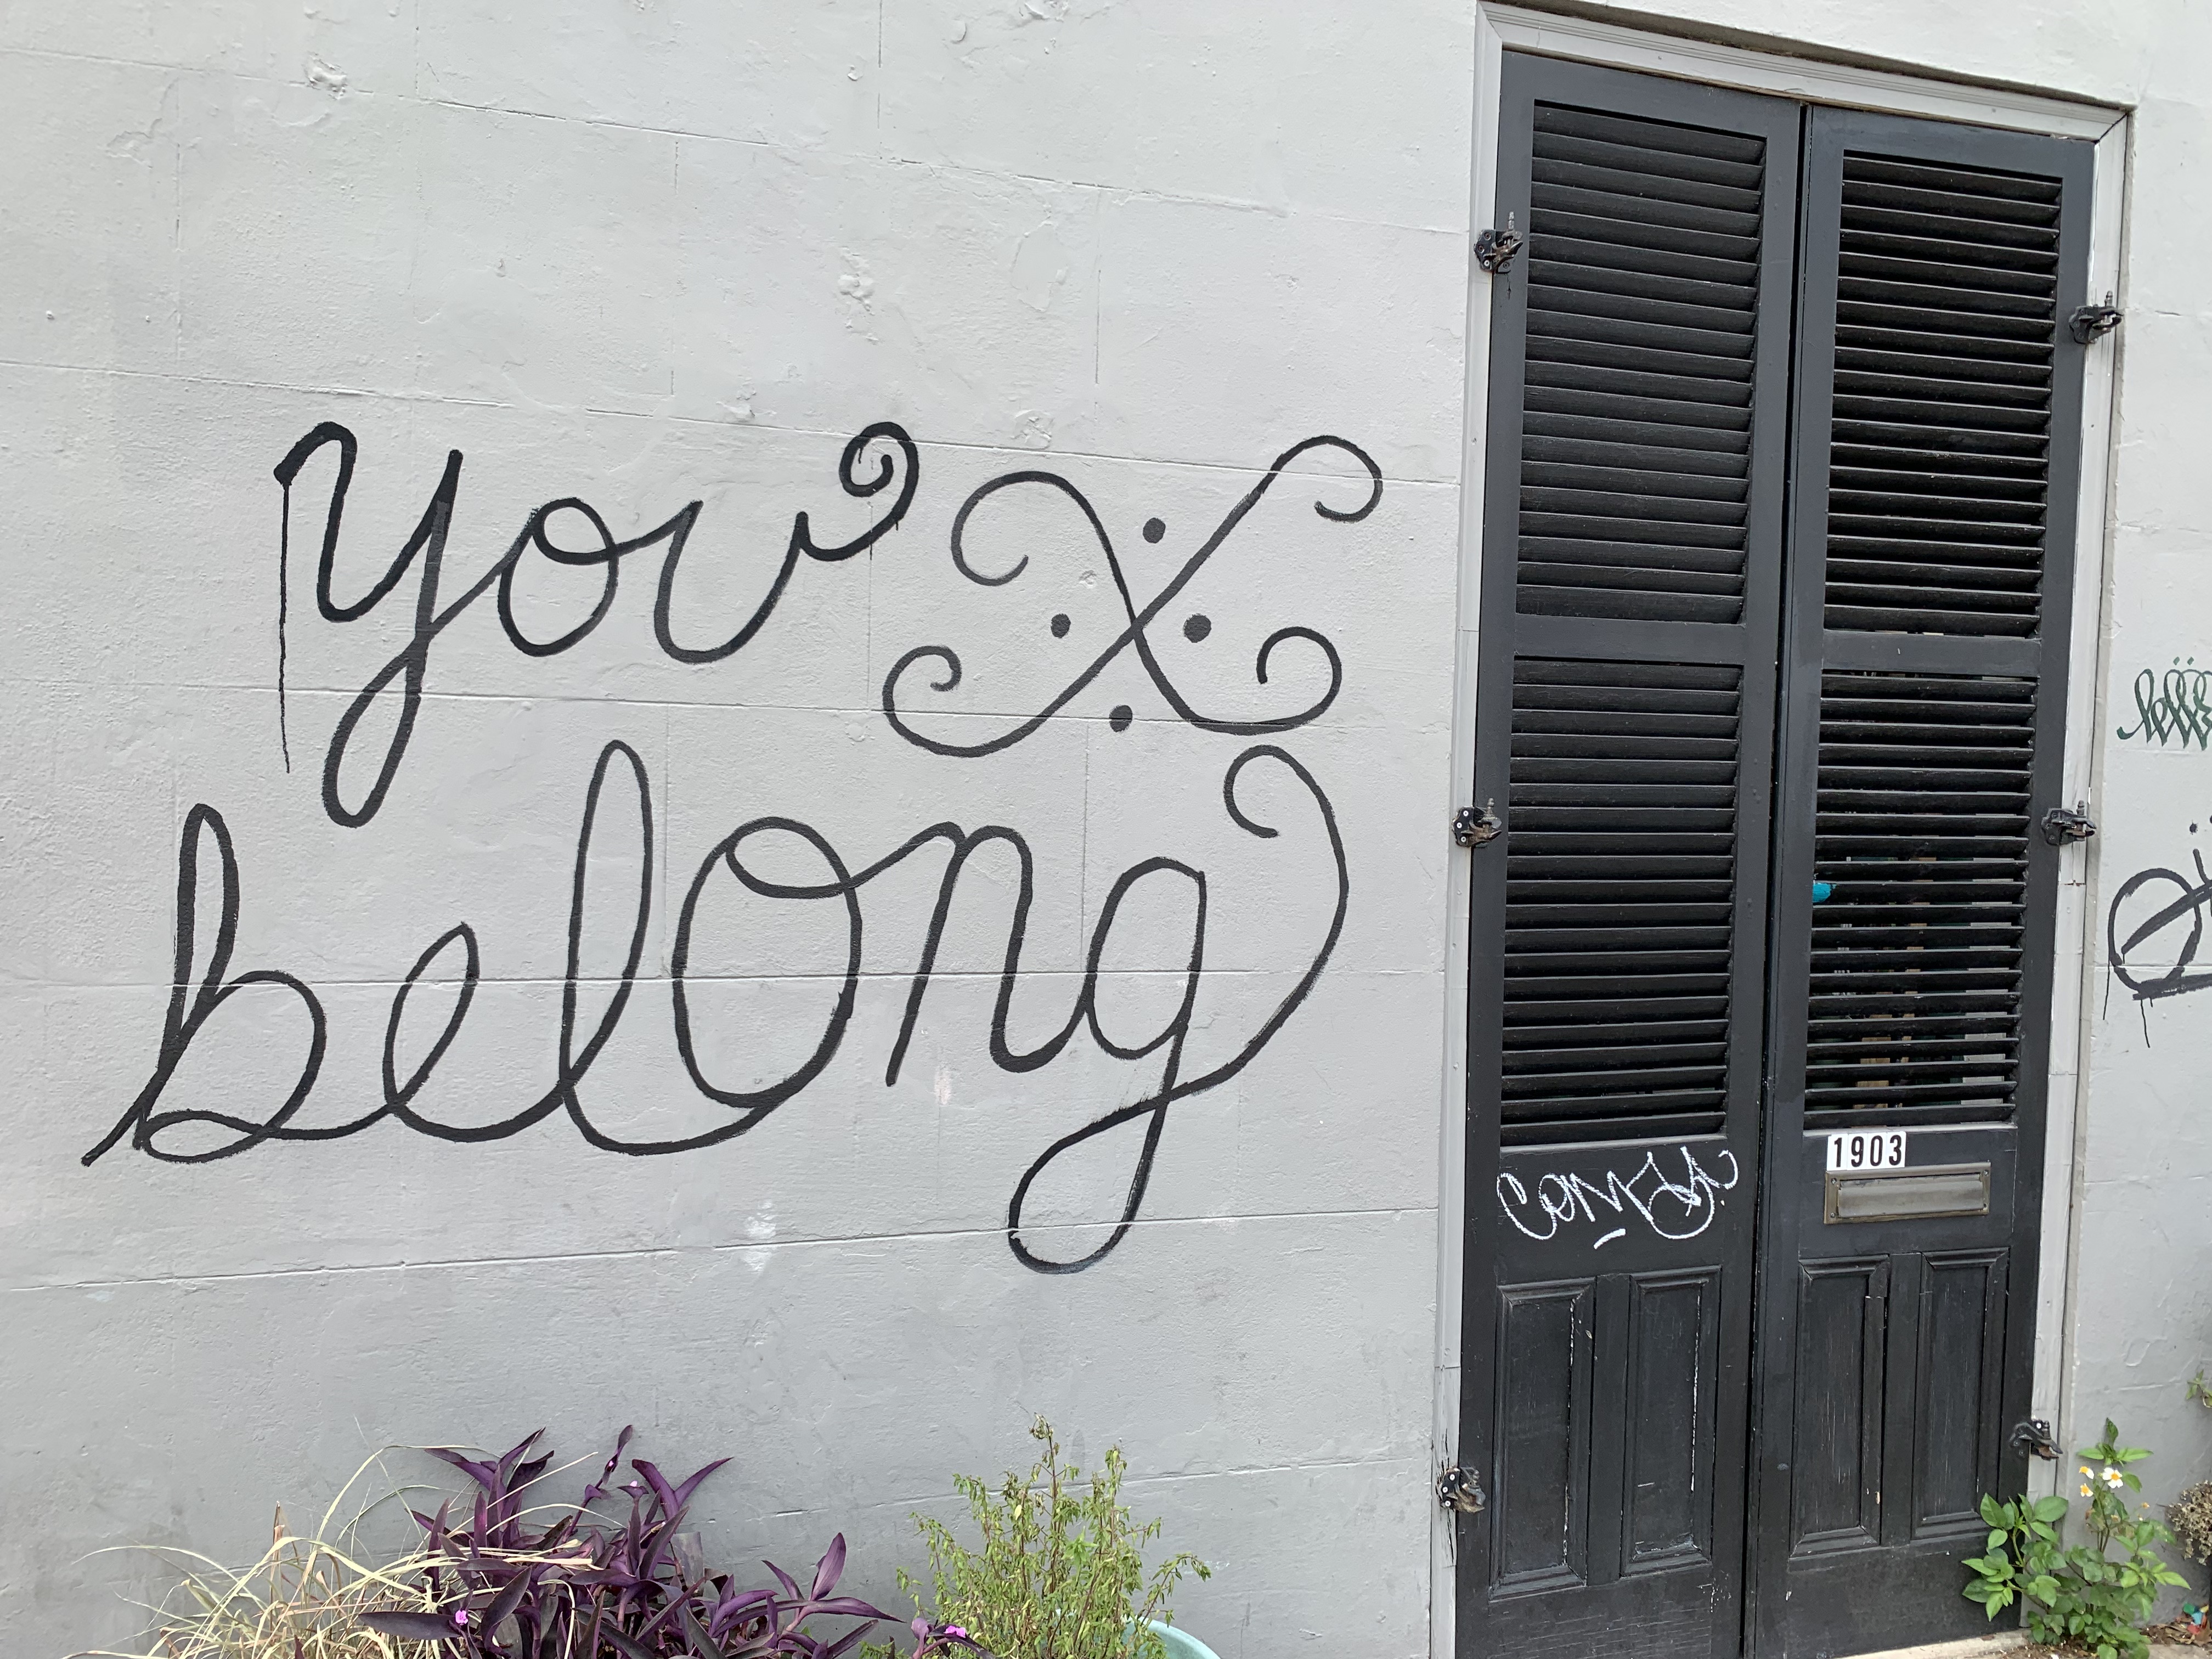 You belong graffiti